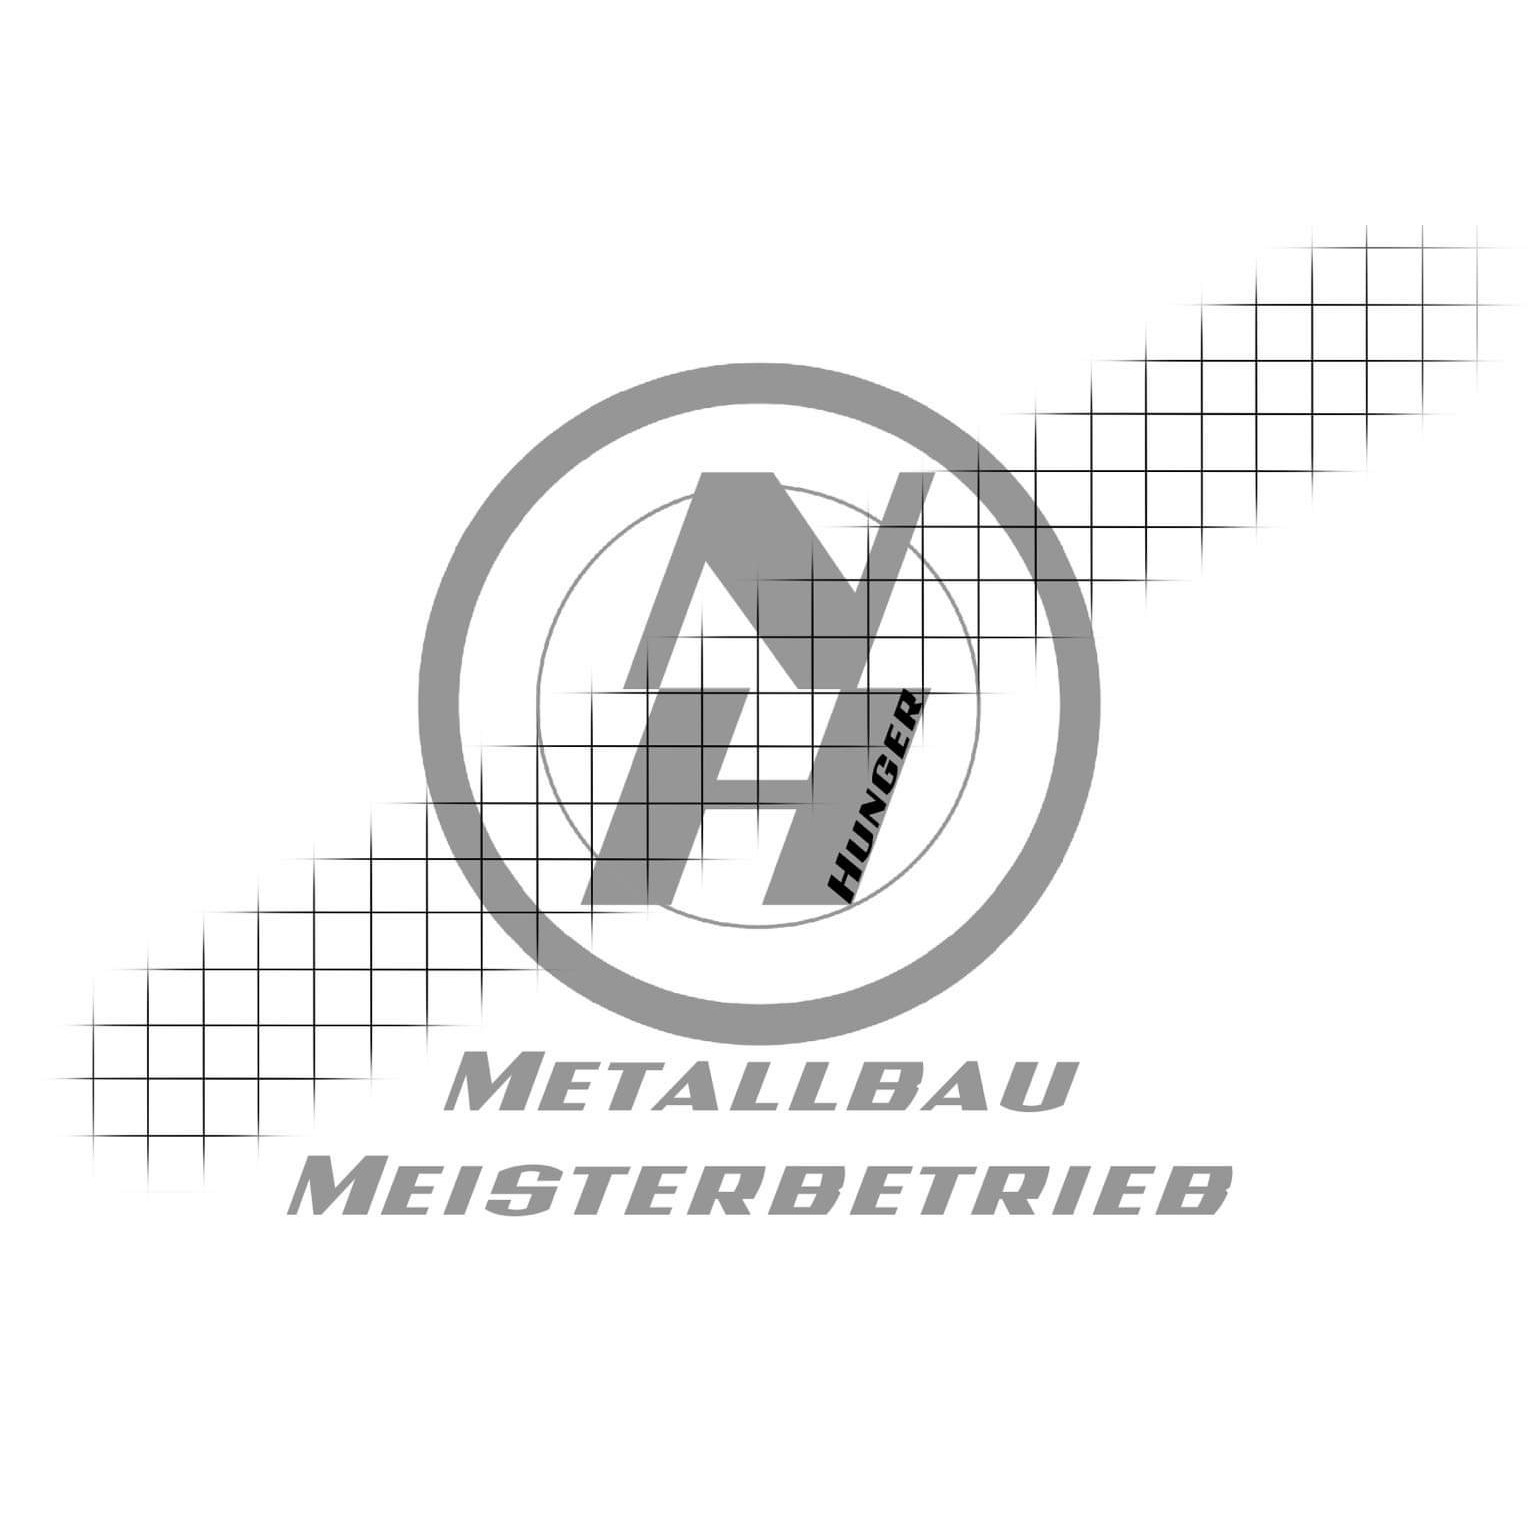 NH Metallbau Meisterbetrieb Inh. Nikolaus Hunger in Niederkrüchten - Logo